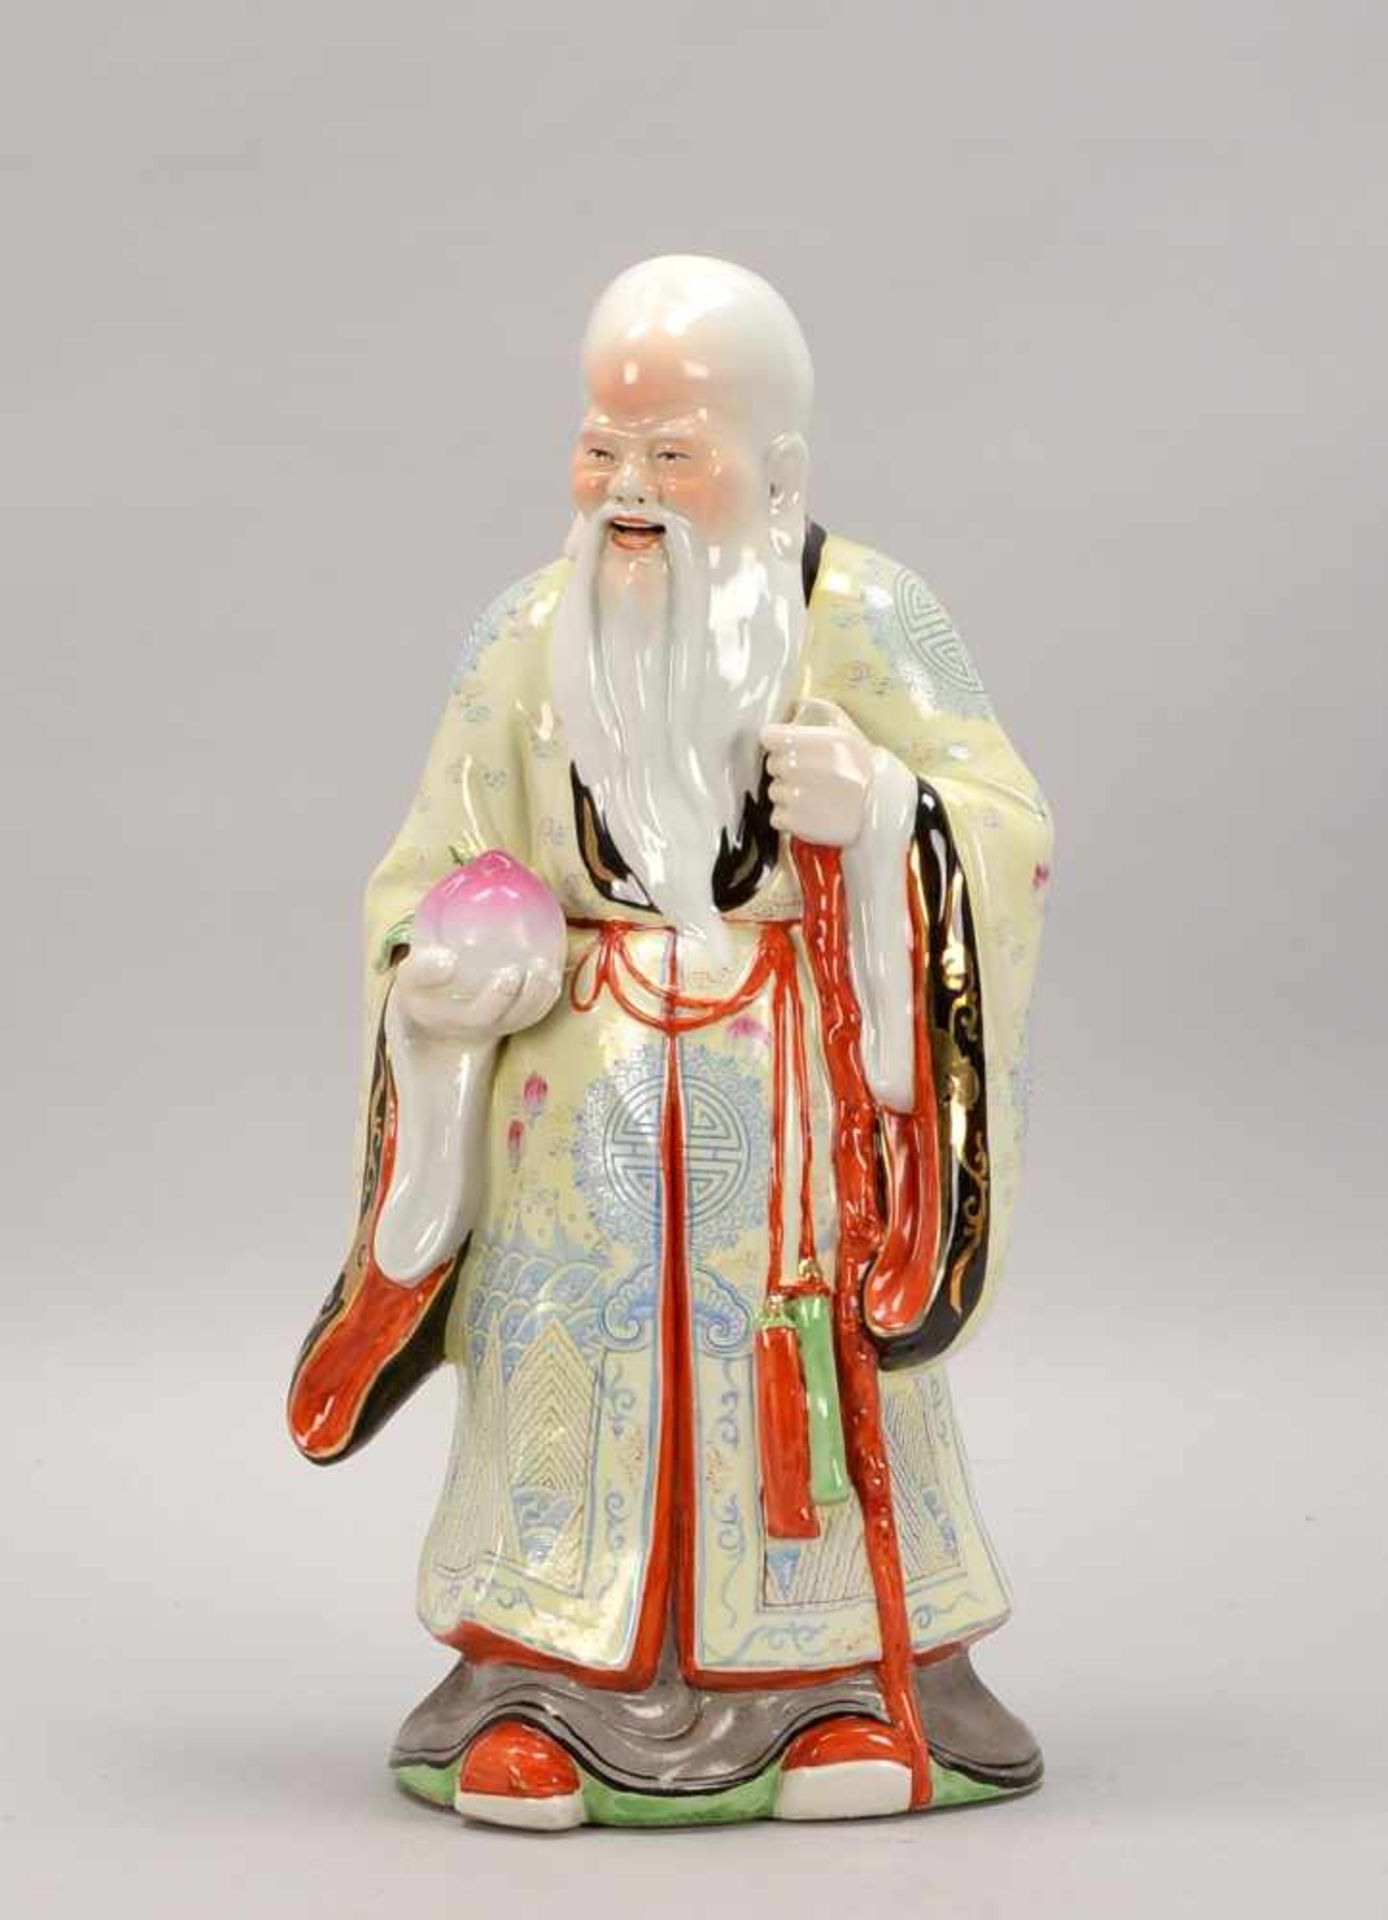 Porzellanfigur, China, 'Chinesischer Weiser' (Glück symbolisierend), farbig gefasst, partiell